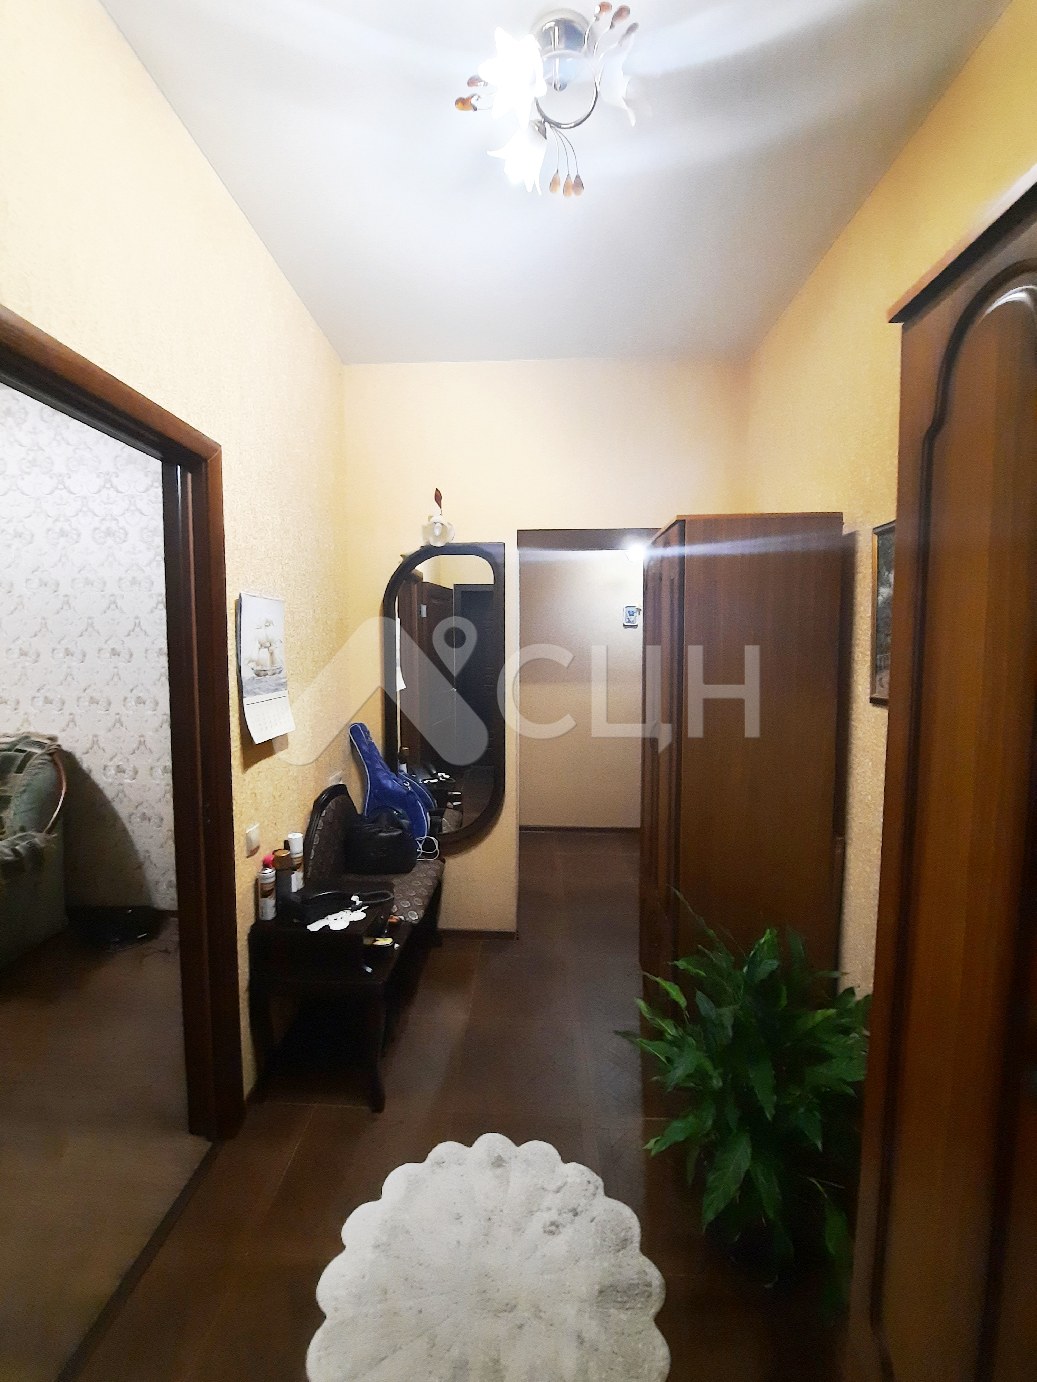 купить недвижимость в сарове
: Г. Саров, улица Дзержинского, 7, 2-комн квартира, этаж 1 из 3, продажа.